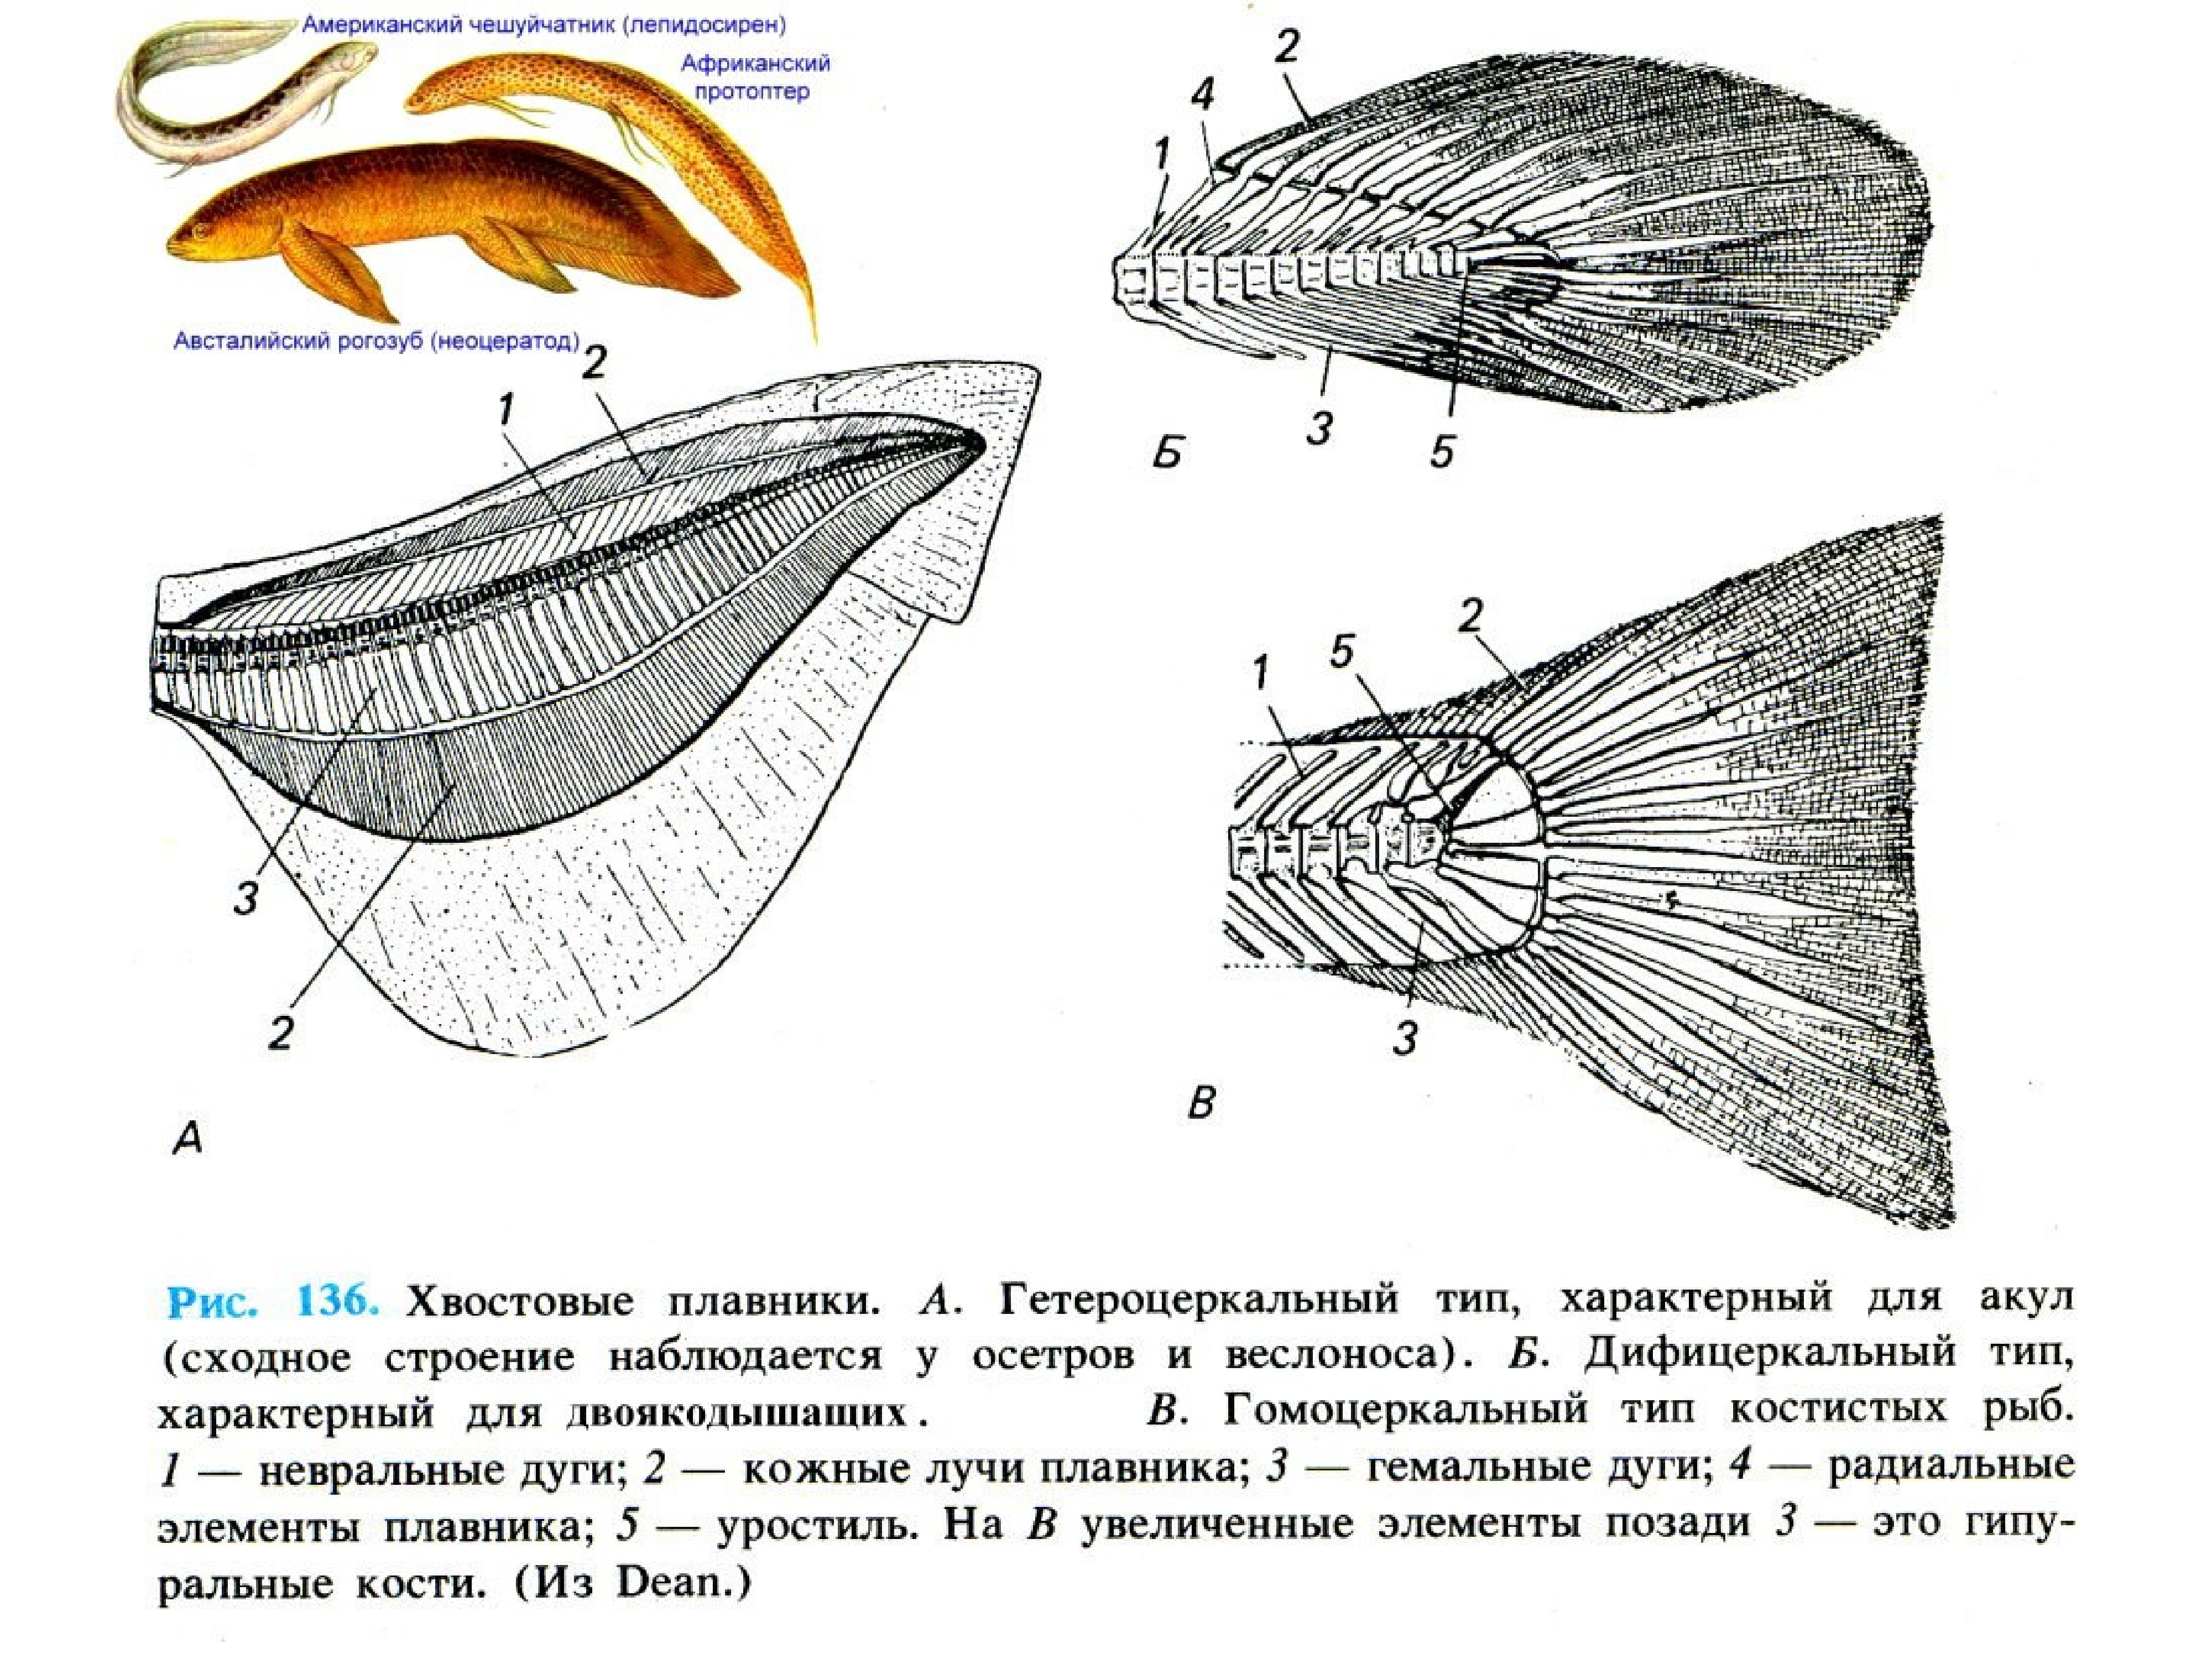 Строение хвостового плавника костистой рыбы